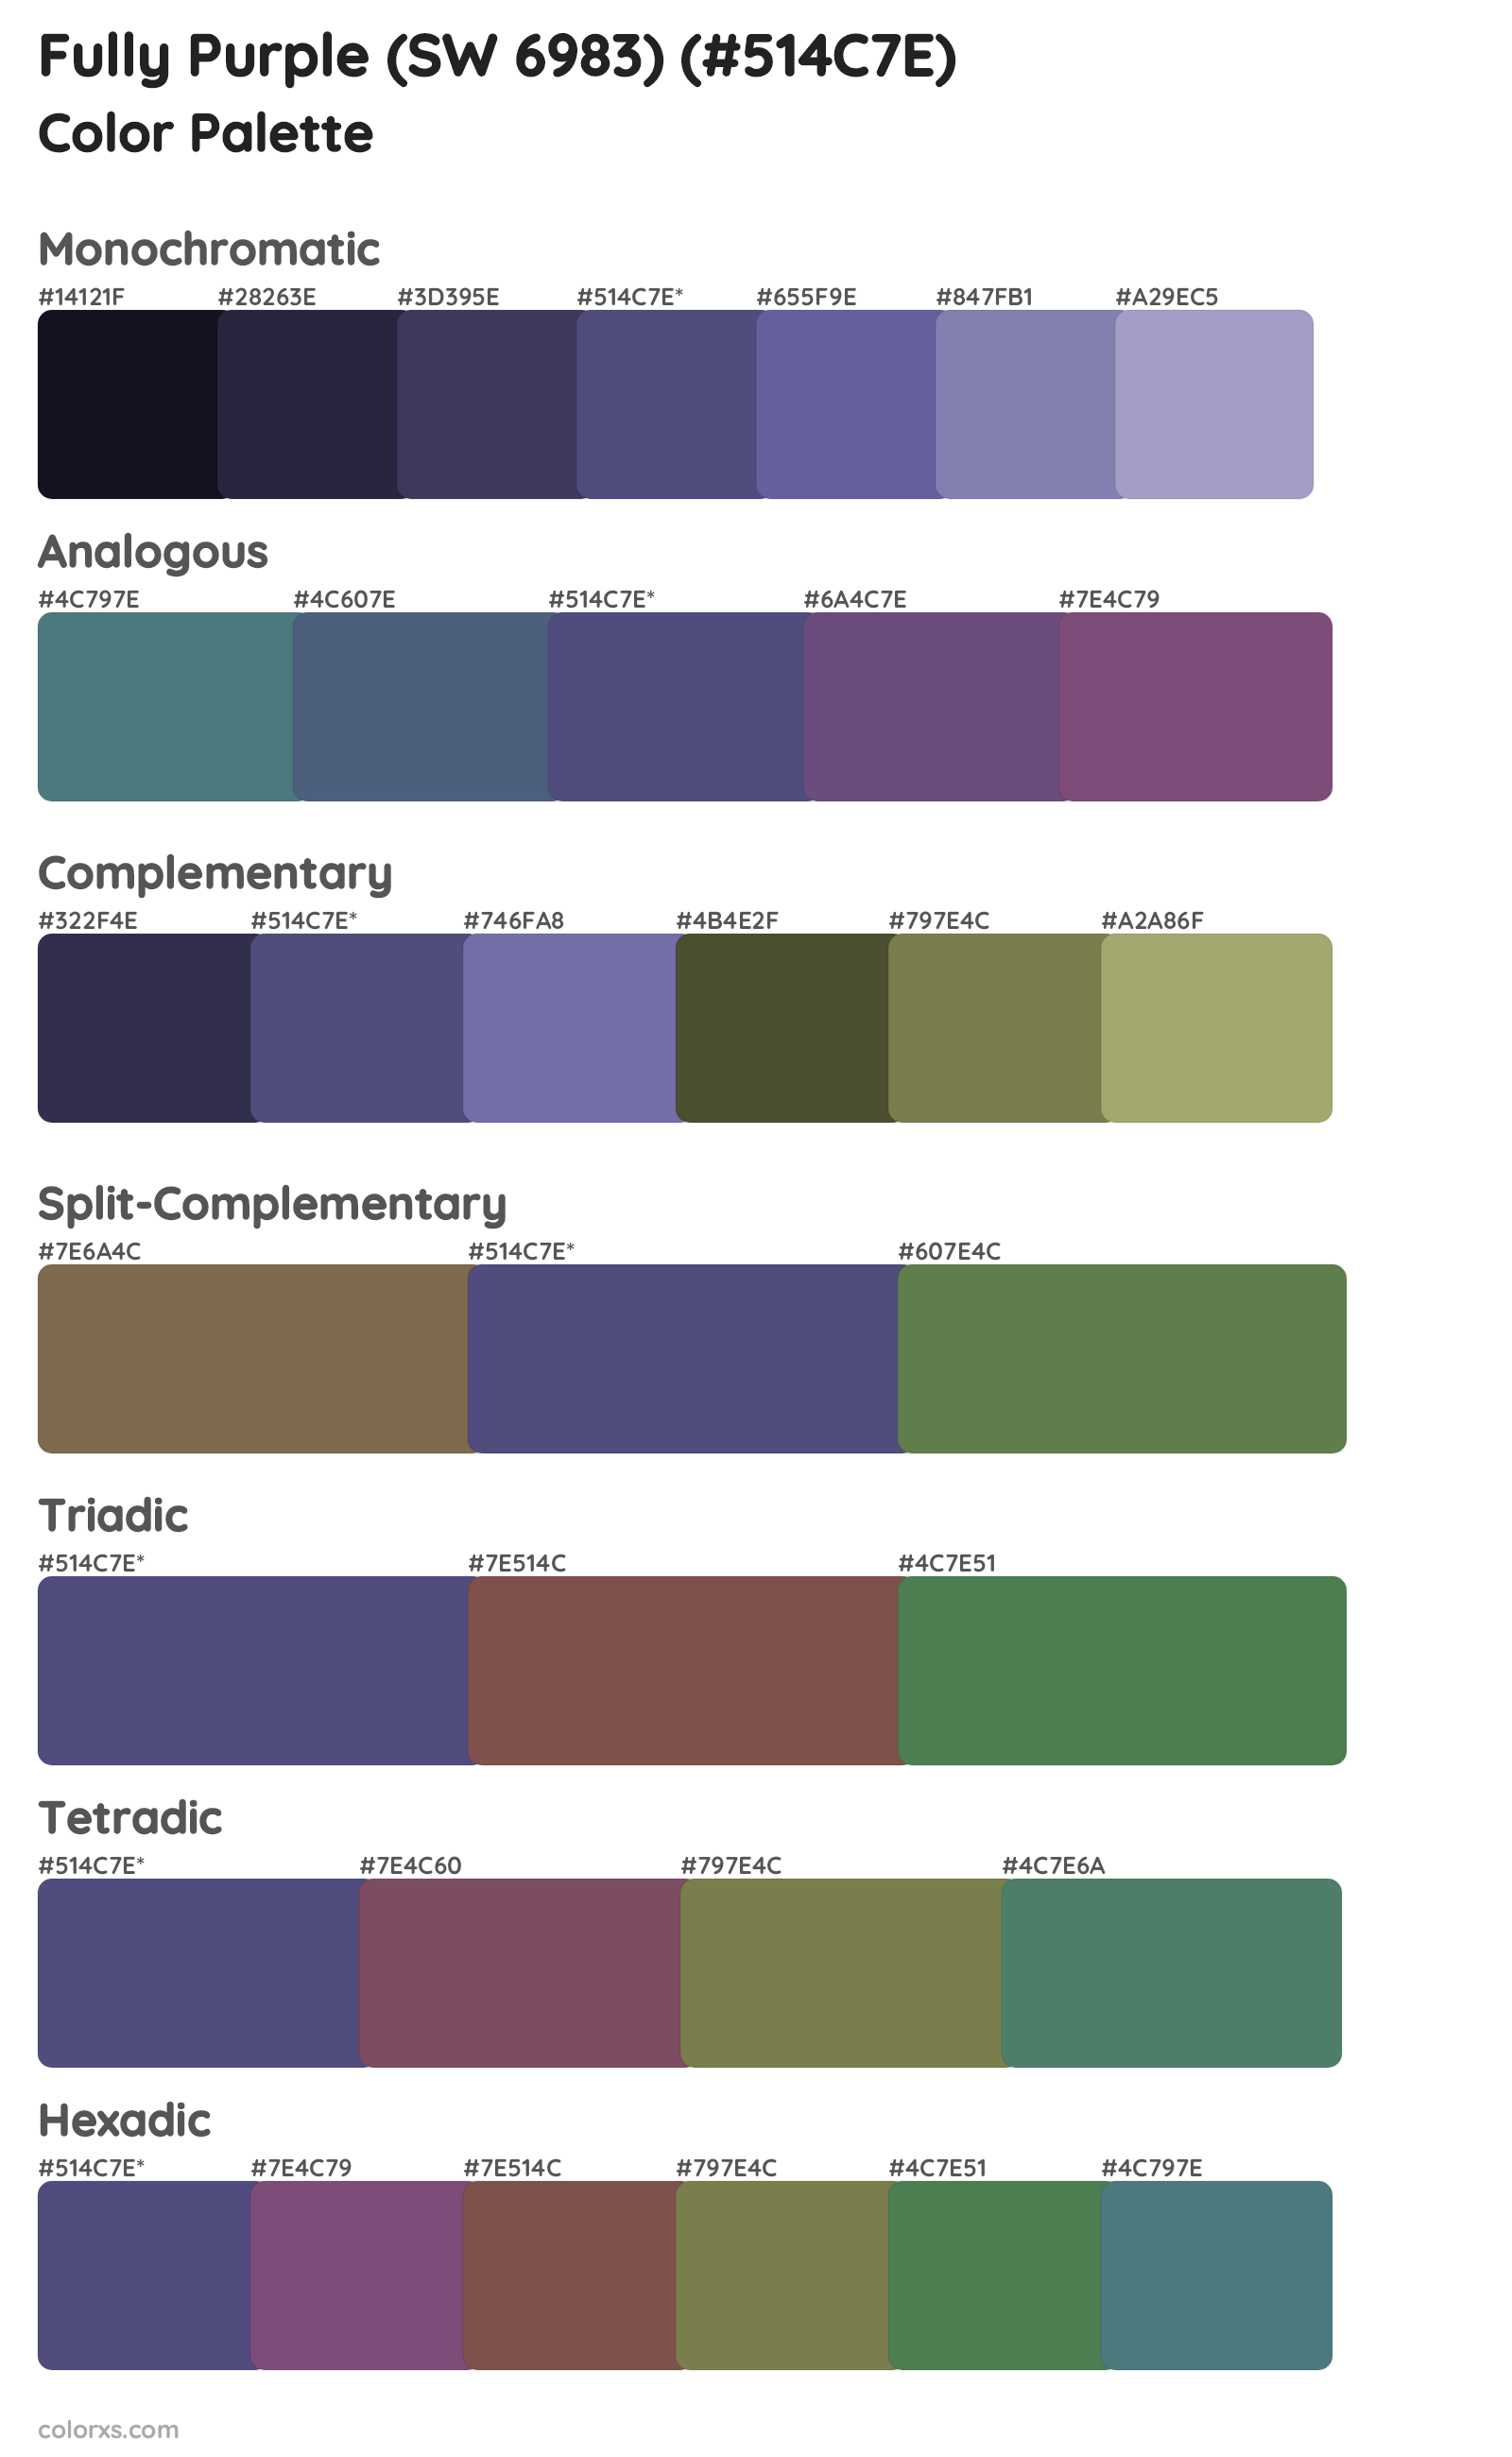 Fully Purple (SW 6983) Color Scheme Palettes